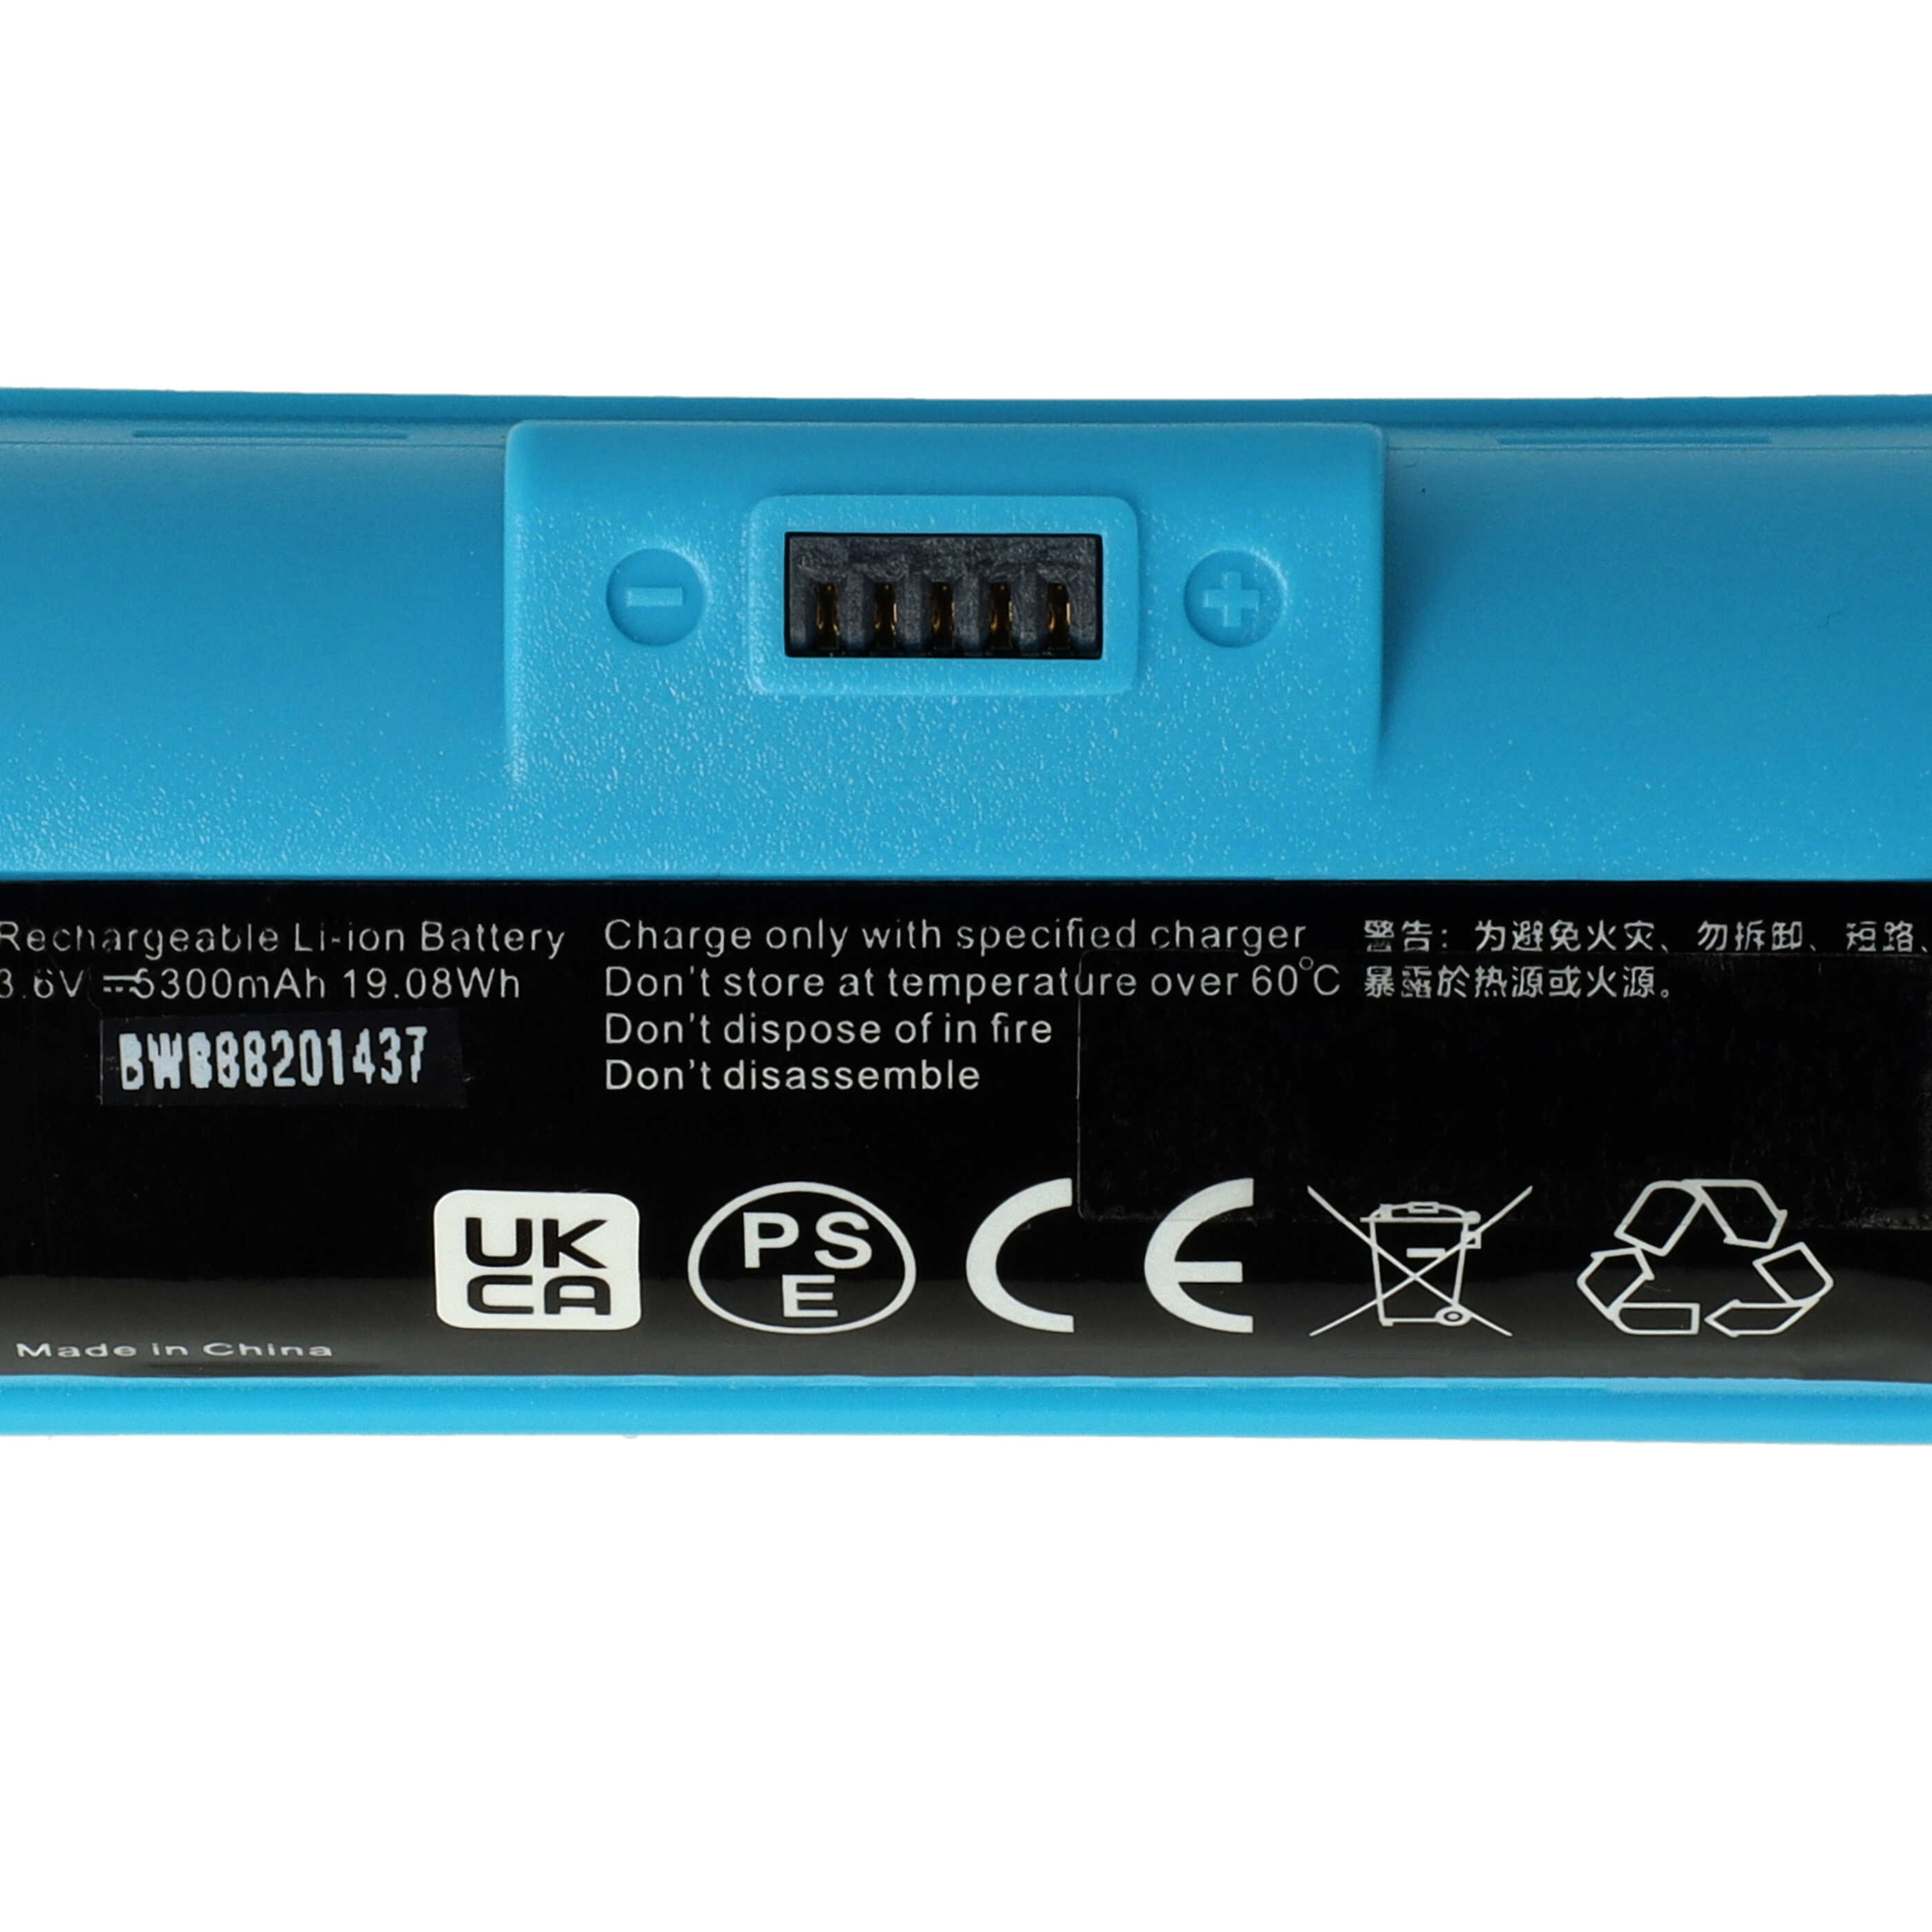 Batterie remplace iRobot BC674, 4446040 pour robot de ménage - 5300mAh 3,6V Li-ion